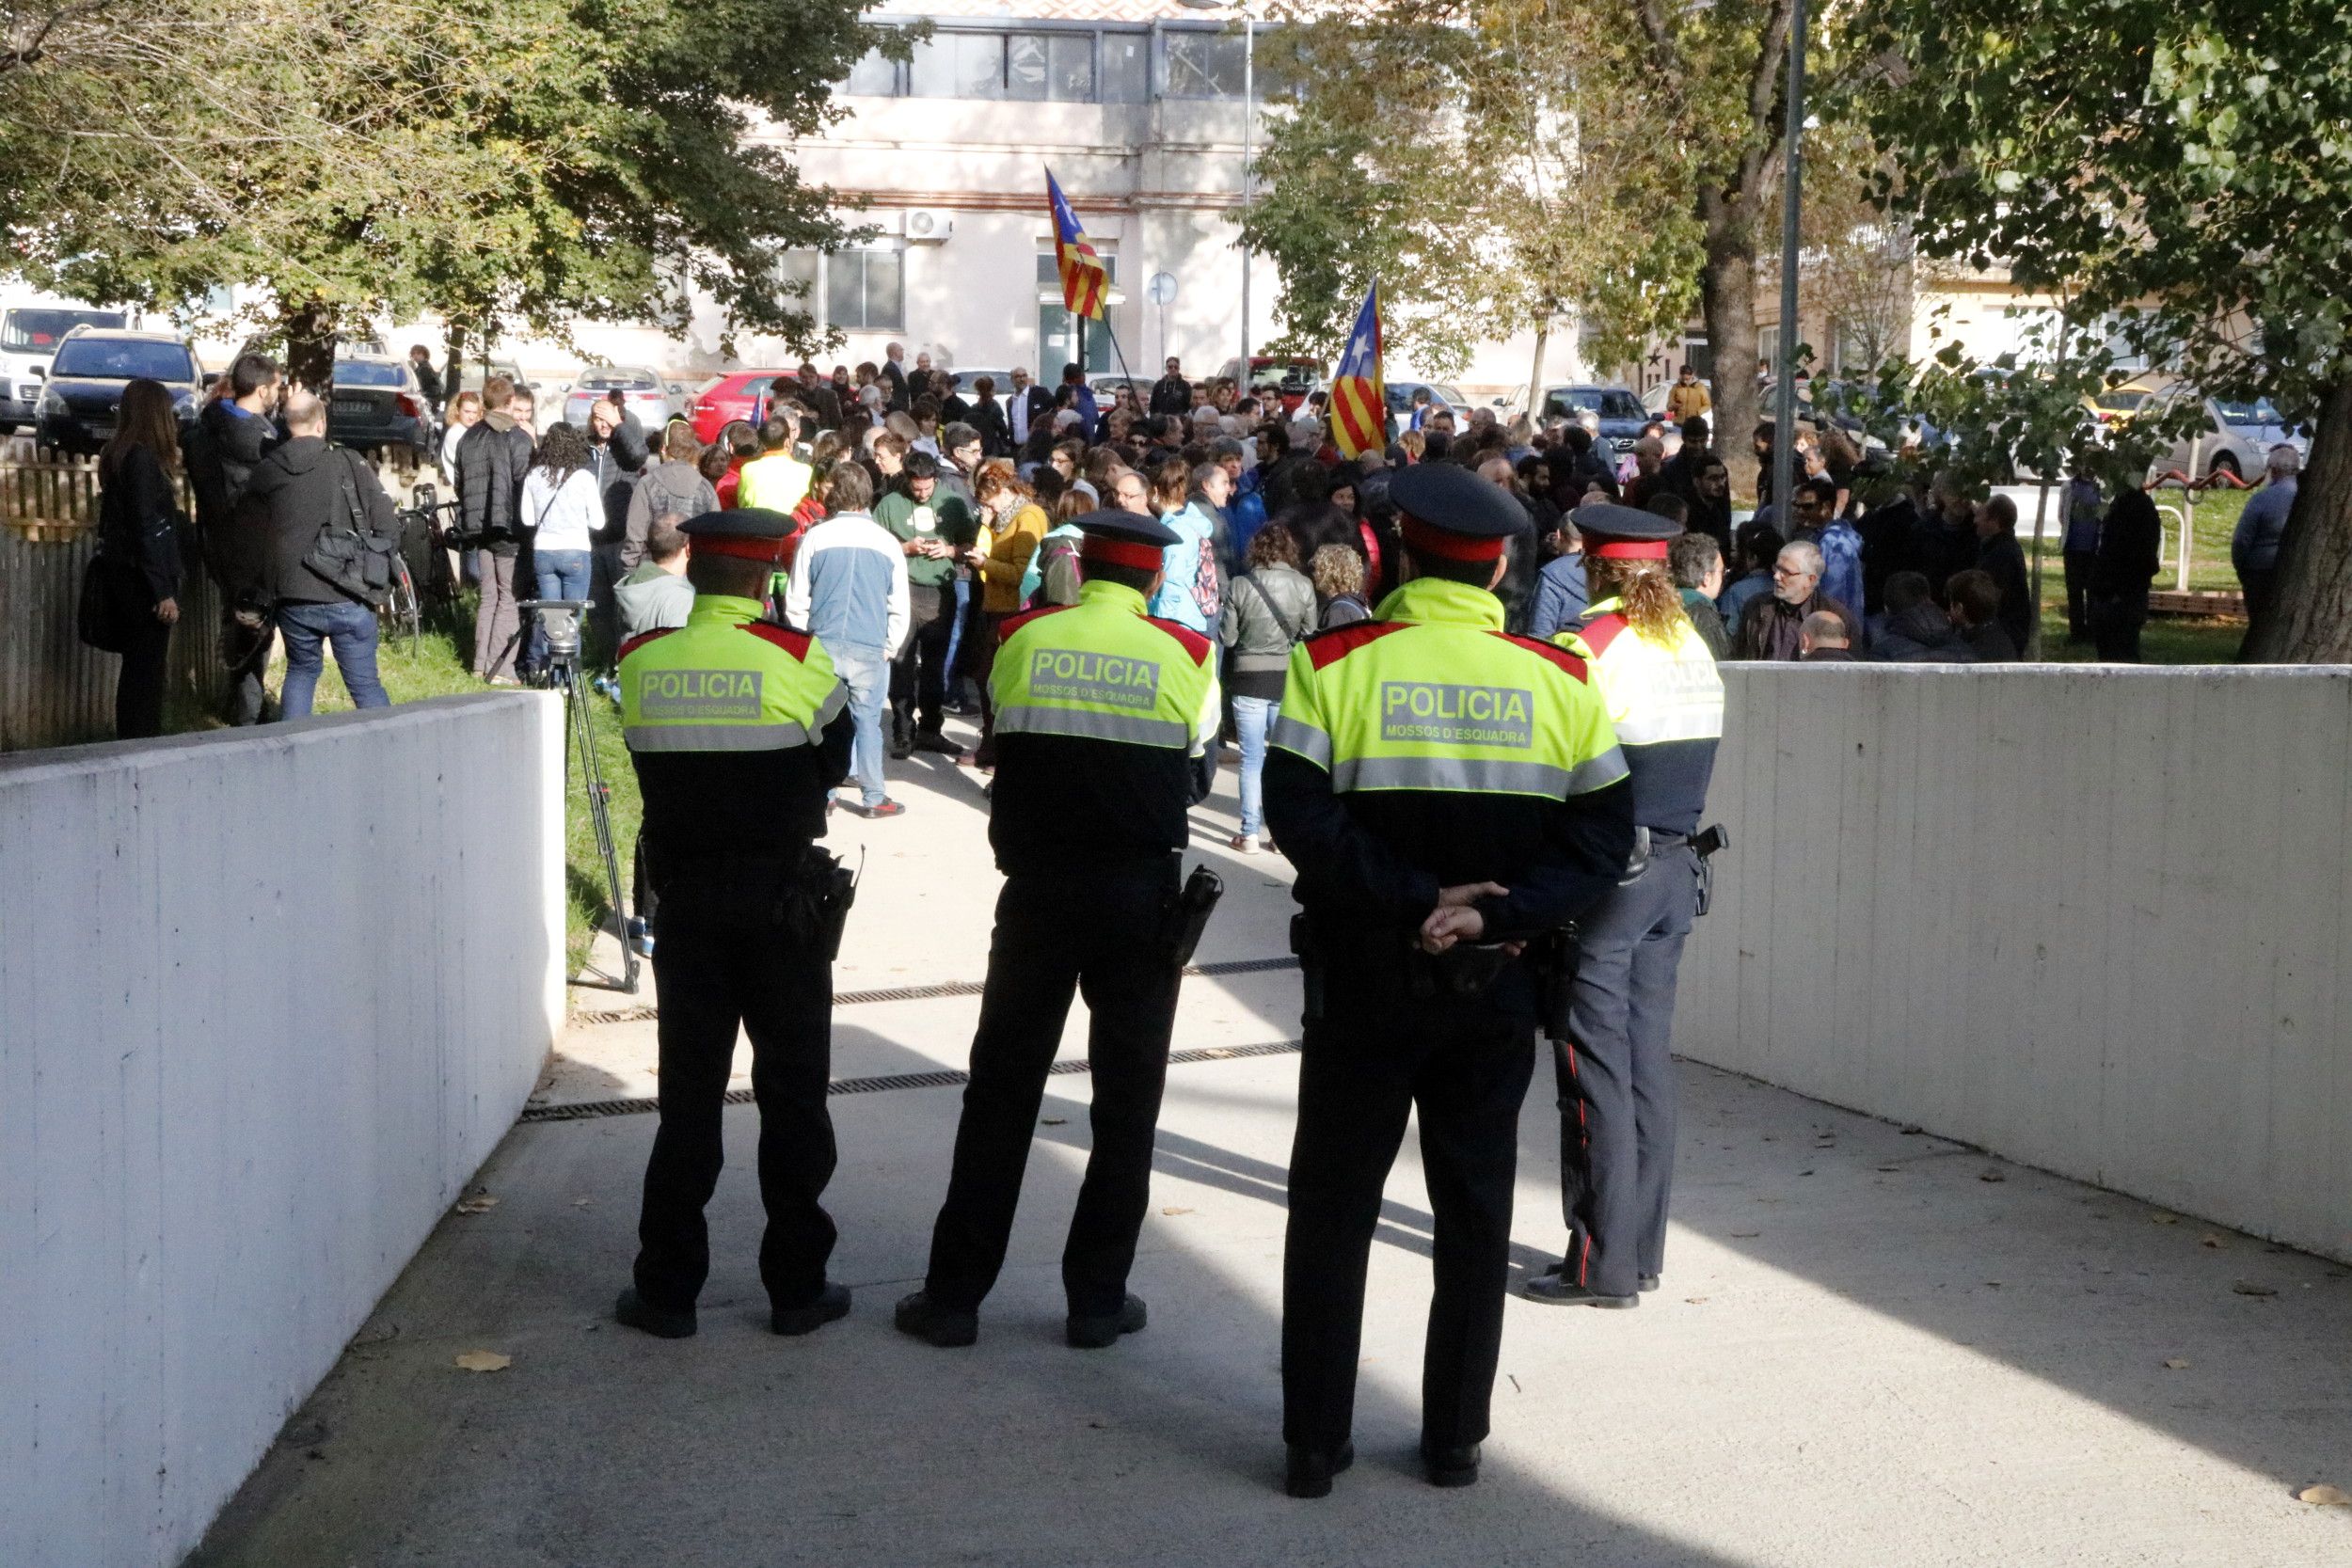 Mobilització davant dels jutjats per la detenció de l'alcaldessa de Berga